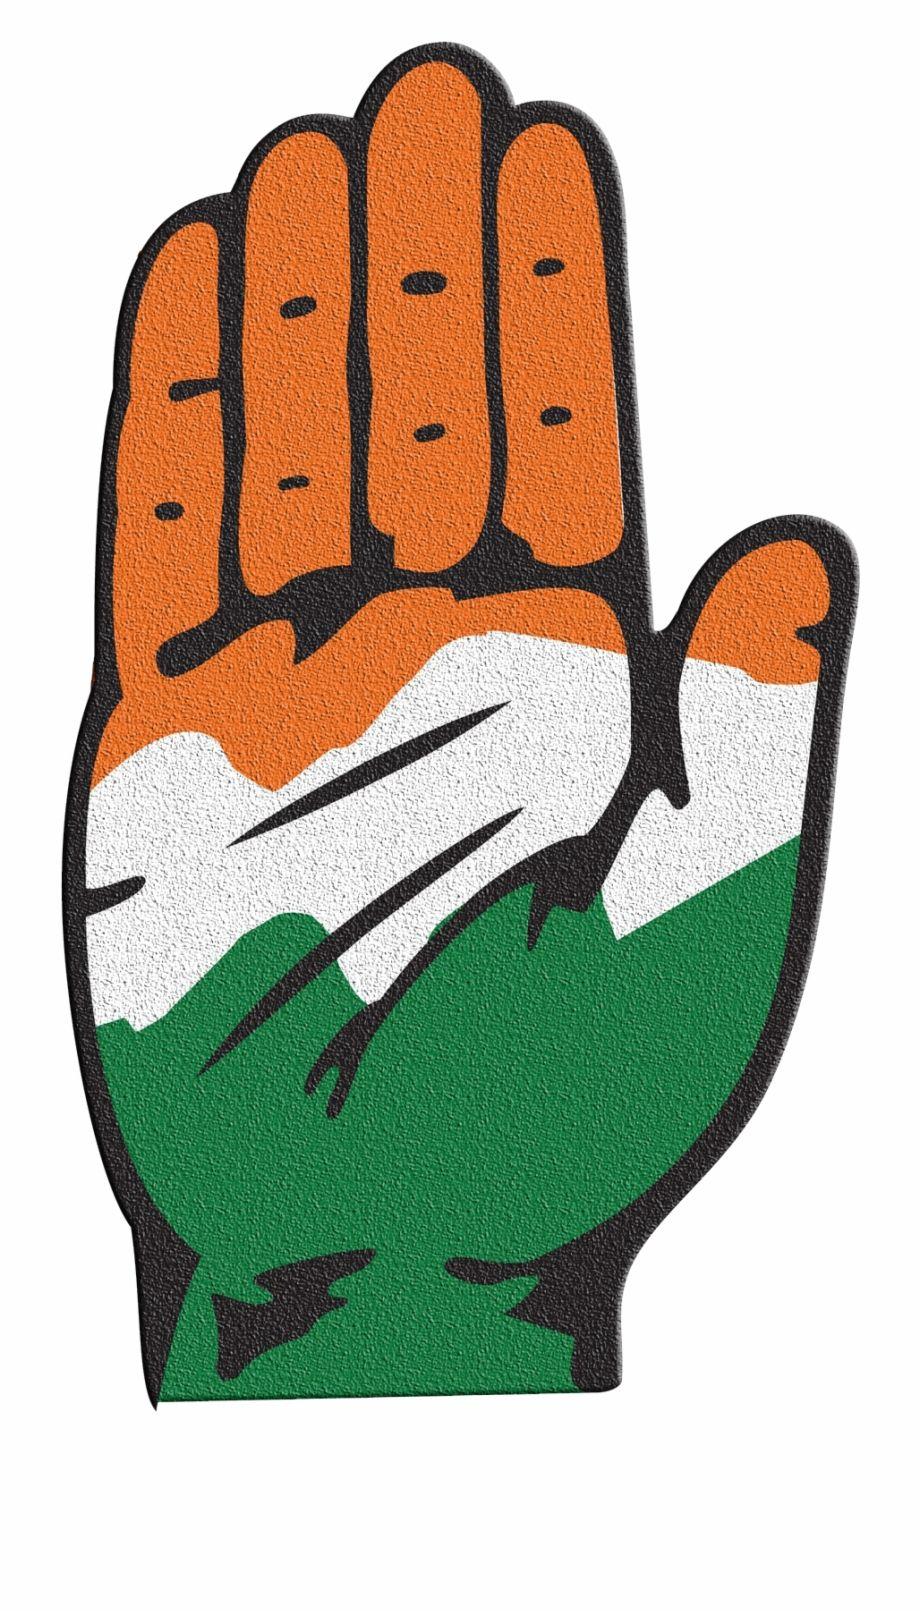 Congress Logo - Congress Logo Png Transparent Image - Indian National Congress Free ...